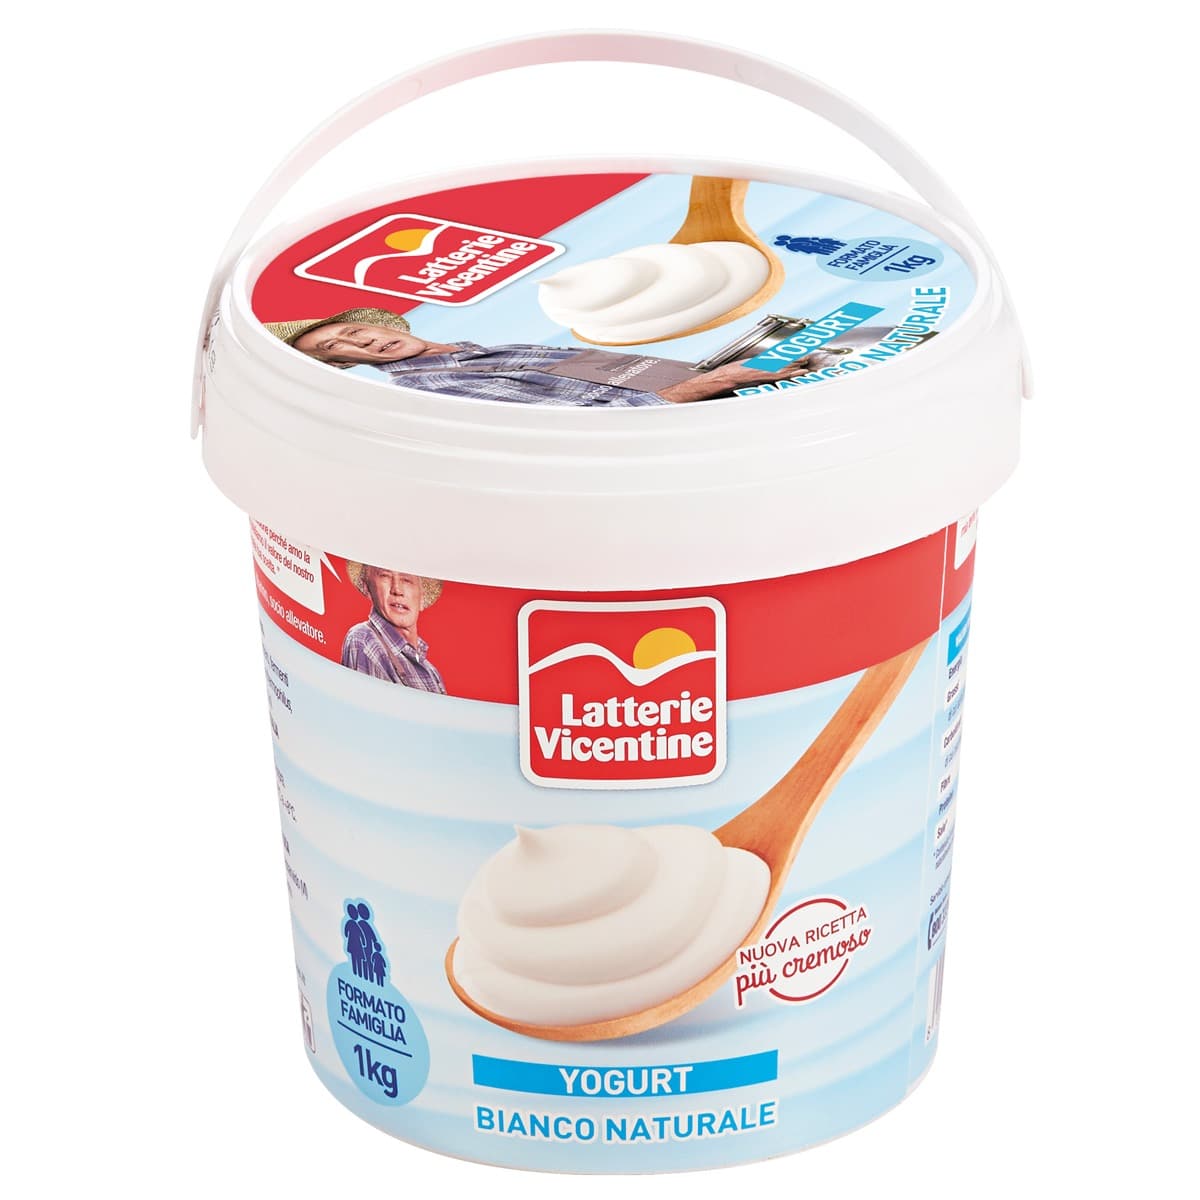 Yogurt Bianco Secchiello 1 Kg - Latterie Vicentine